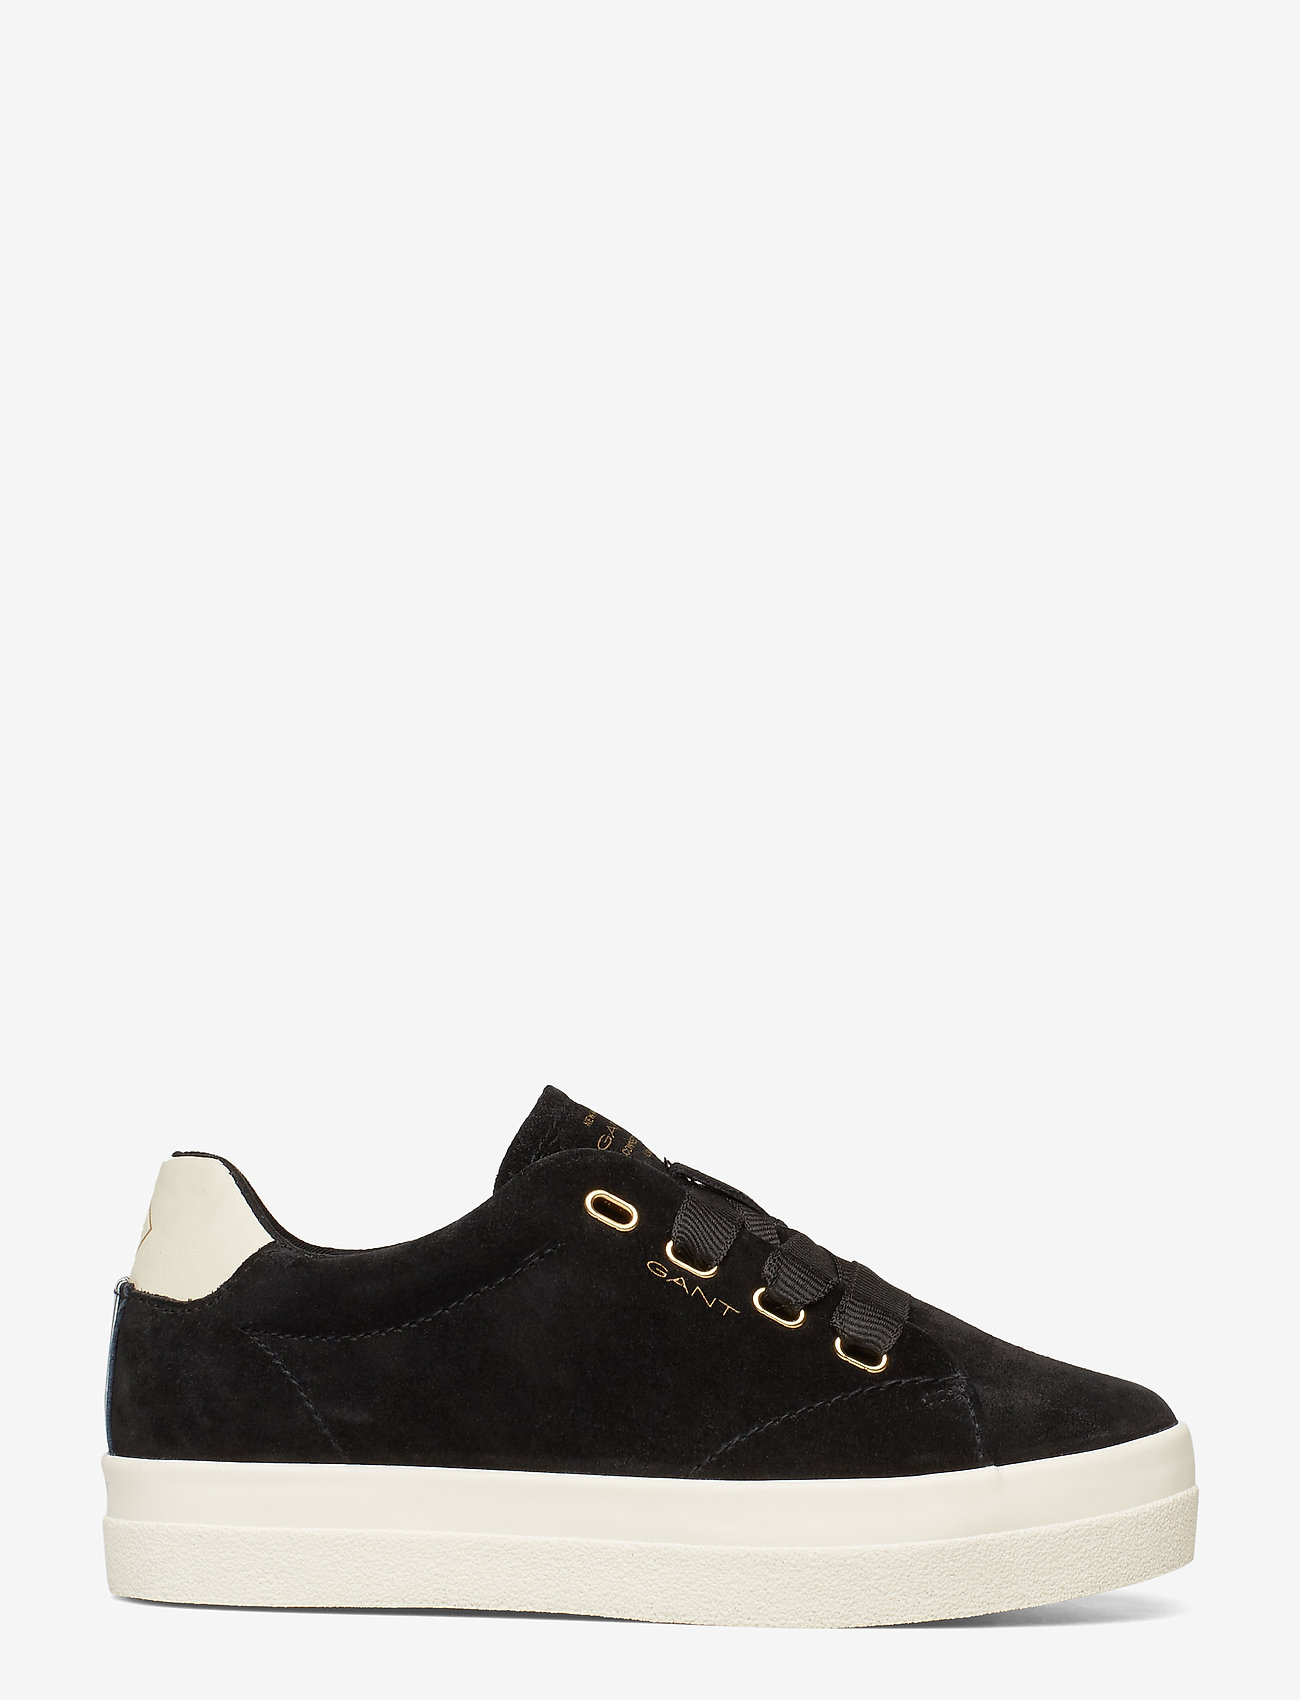 Aurora Low Lace Shoes (Black) (99.95 